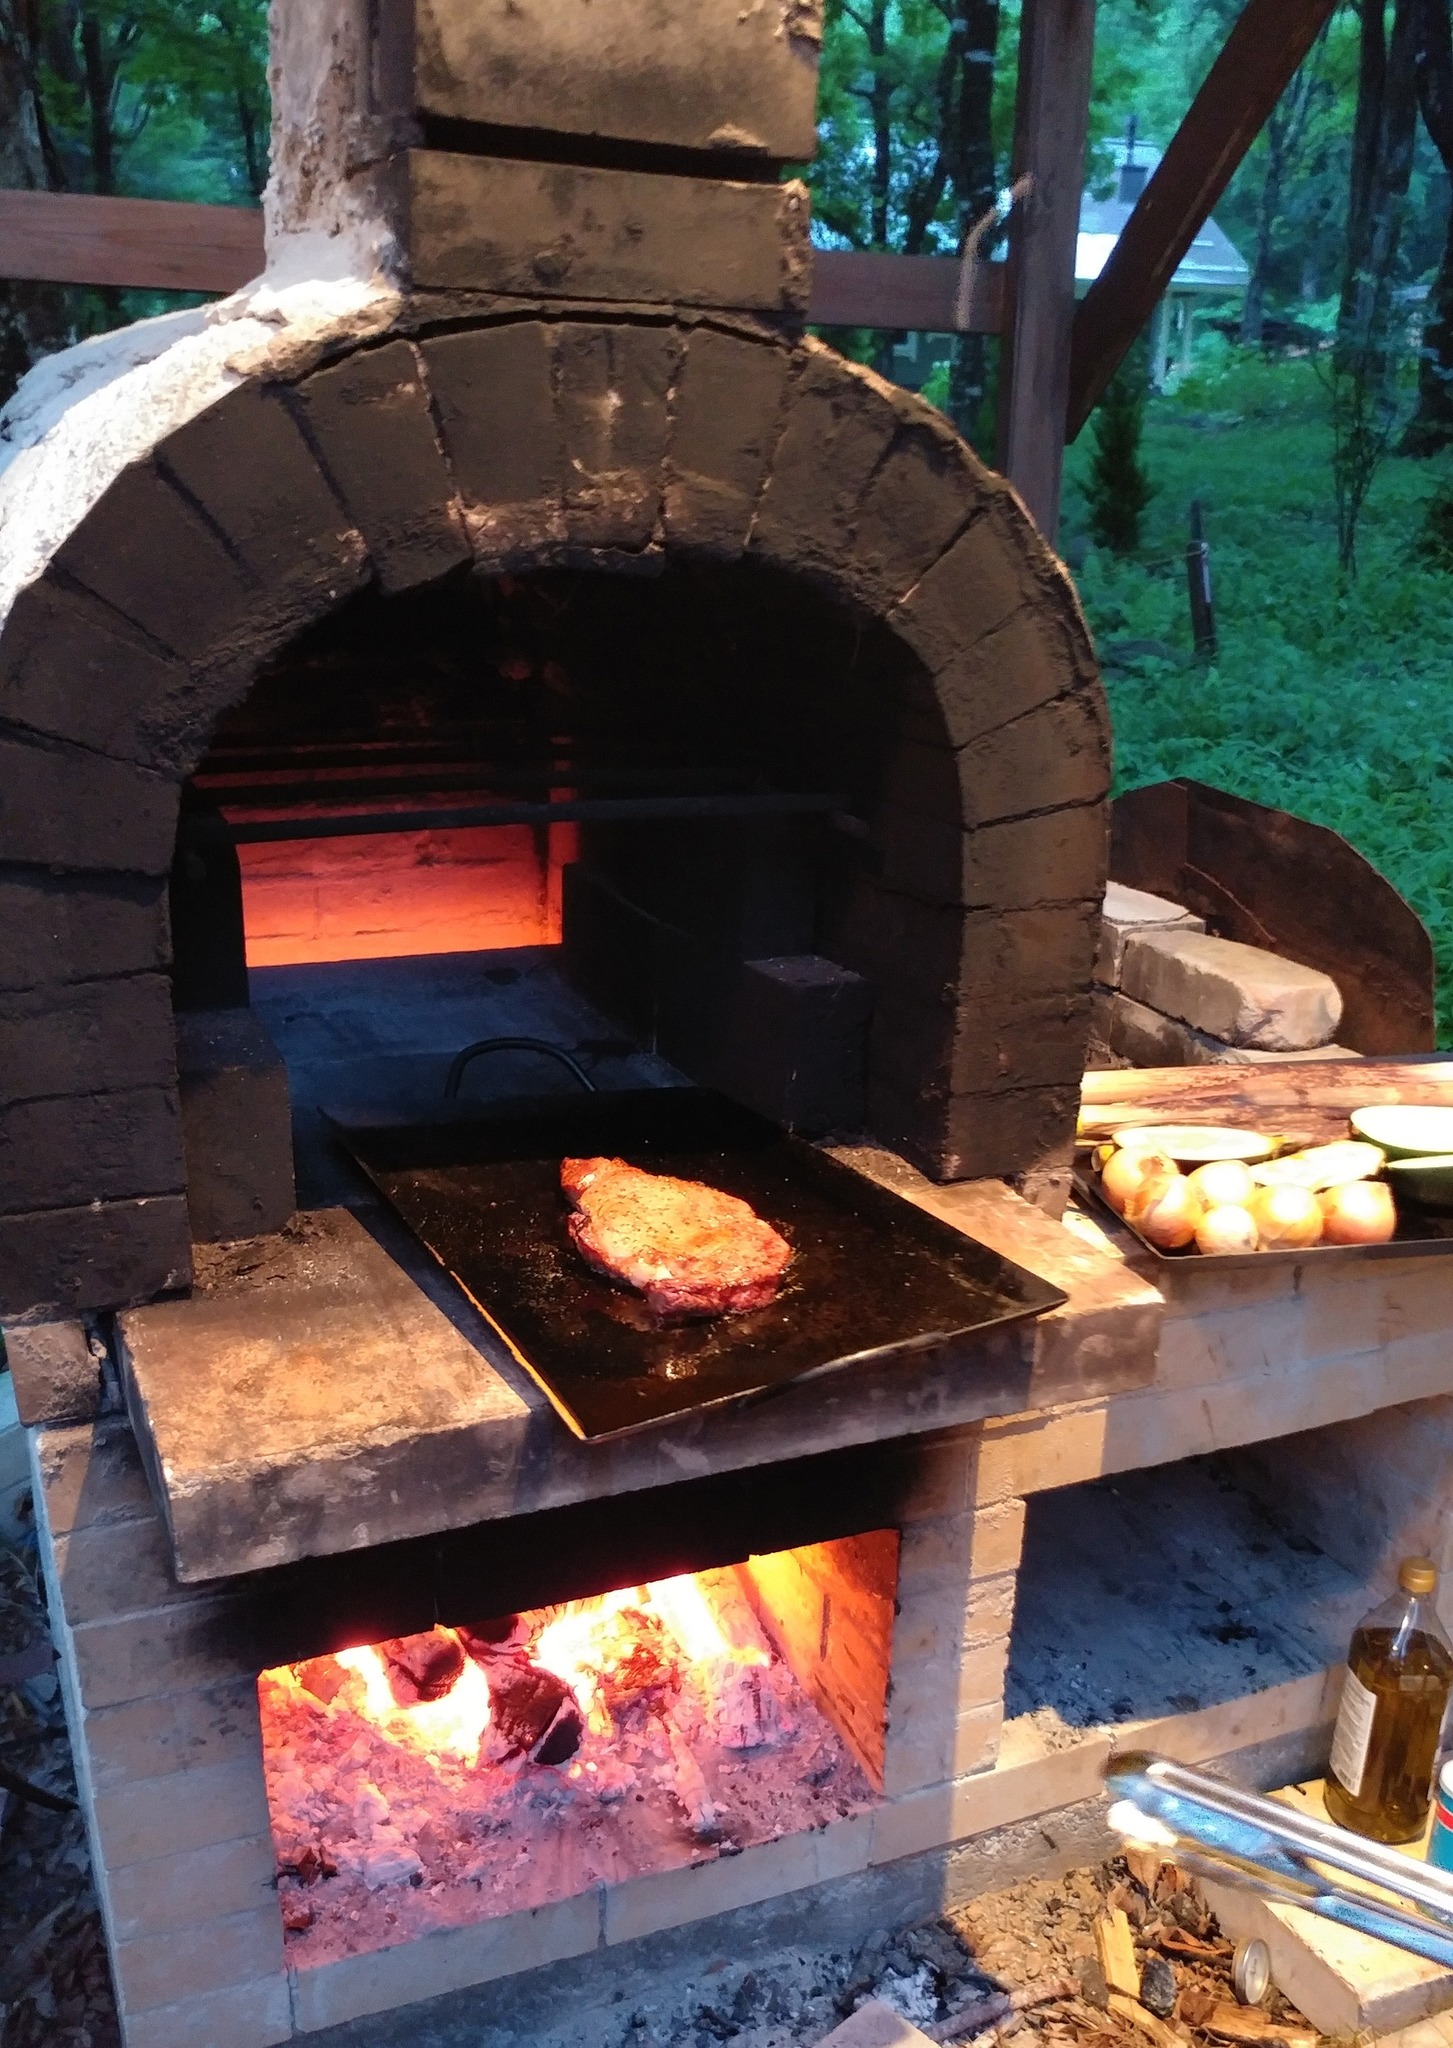 庭にある石窯を利用してピザや肉、野菜などを焼く石窯BBQができます(別途1回5000円が必要です)。ご希望の場合は前日までにお申し出ください。